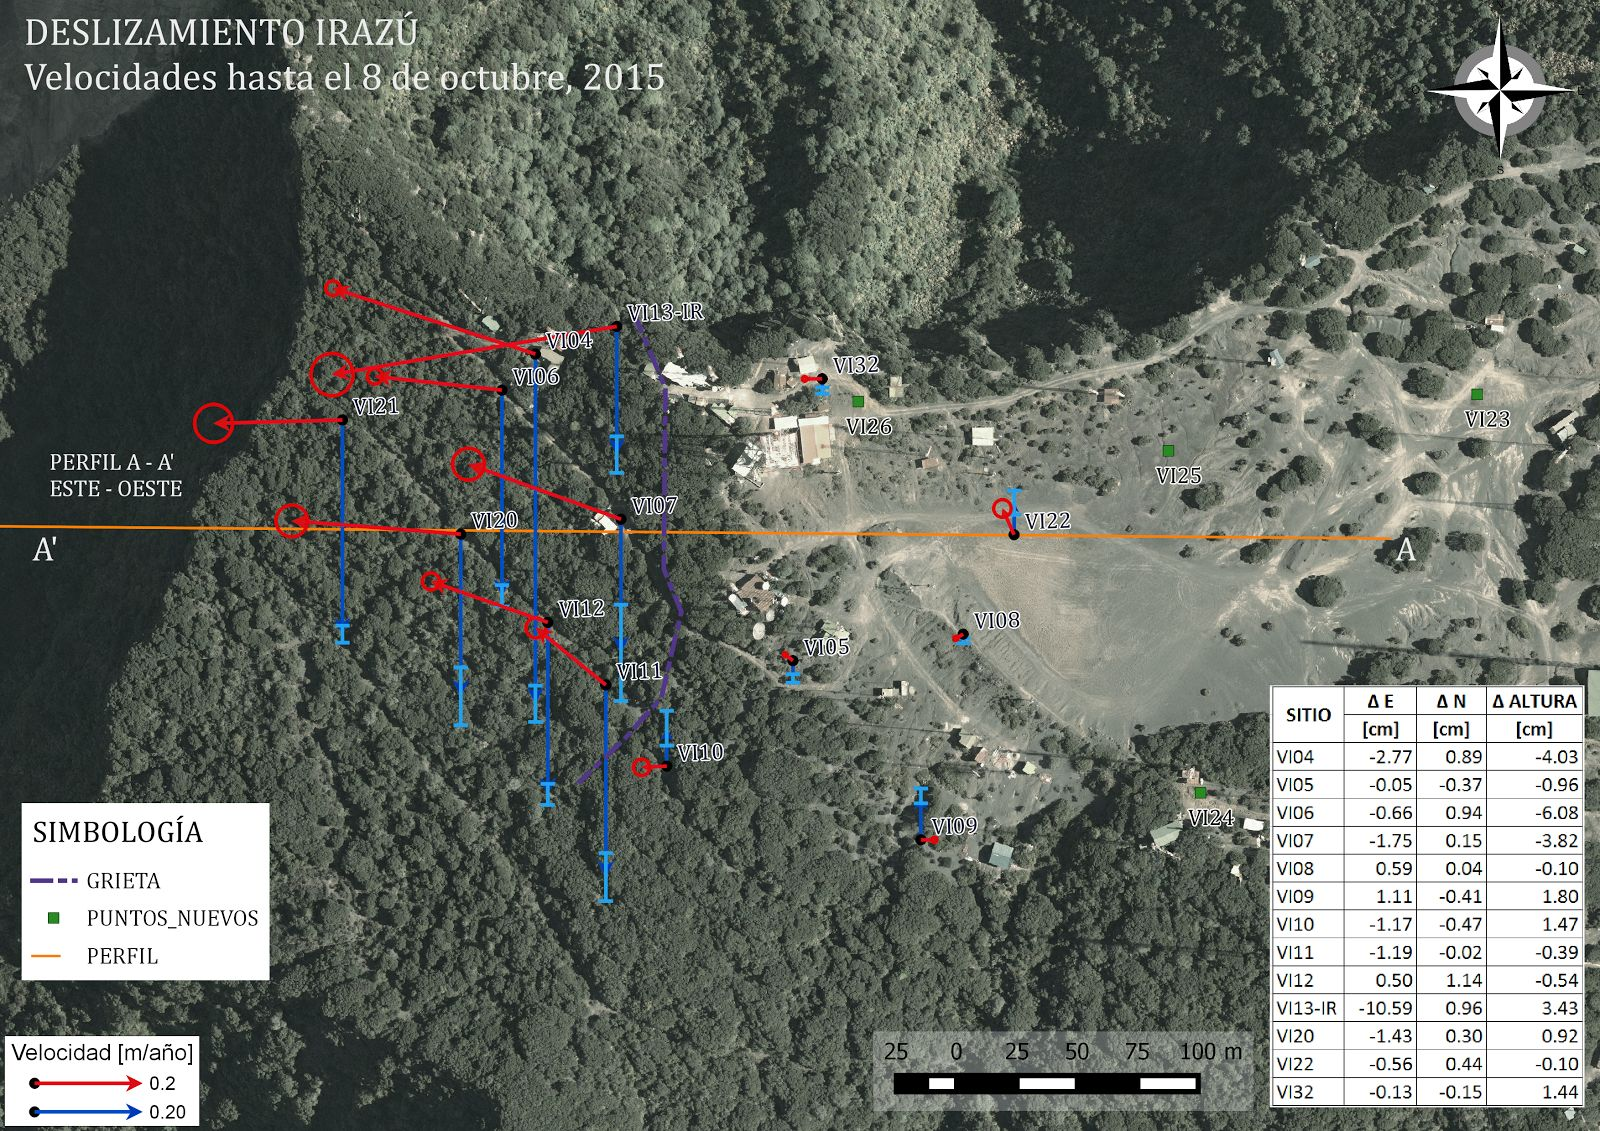 Figura 12. Mapa de velocidades anuales en metros de los sitios GNSS ubicados sobre la zona próxima al deslizamiento en el volcán Irazú.